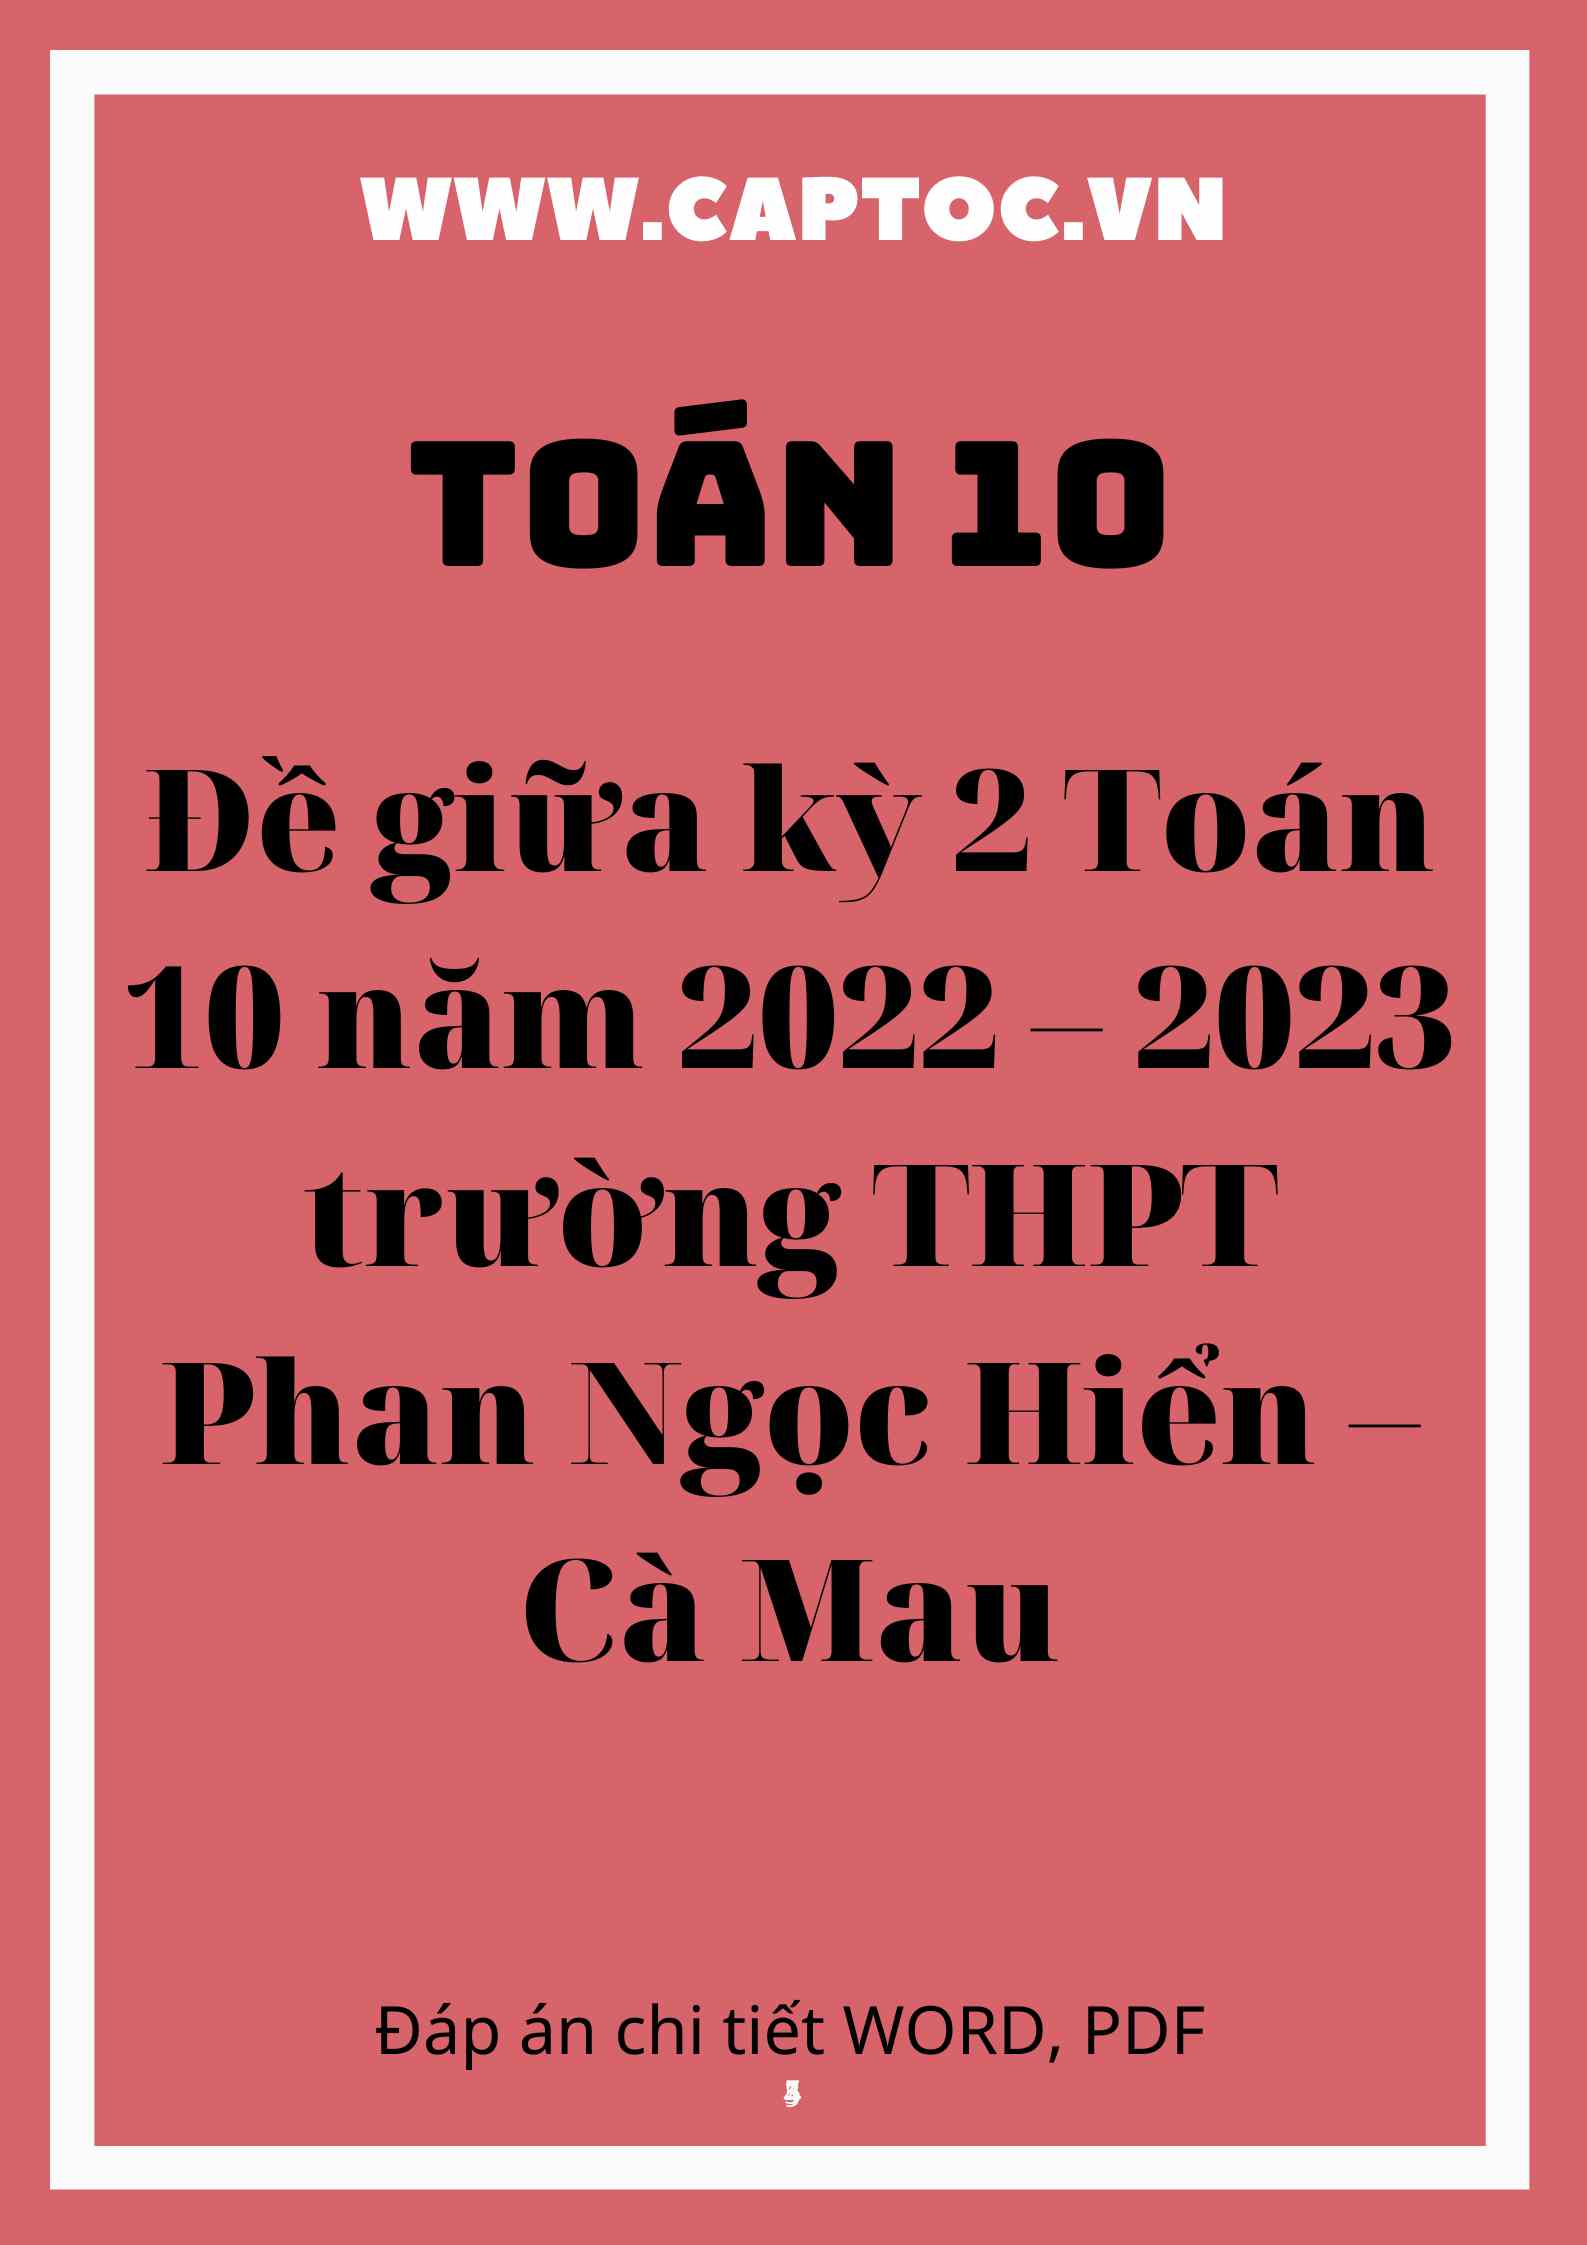 Đề giữa kỳ 2 Toán 10 năm 2022 – 2023 trường THPT Phan Ngọc Hiển – Cà Mau